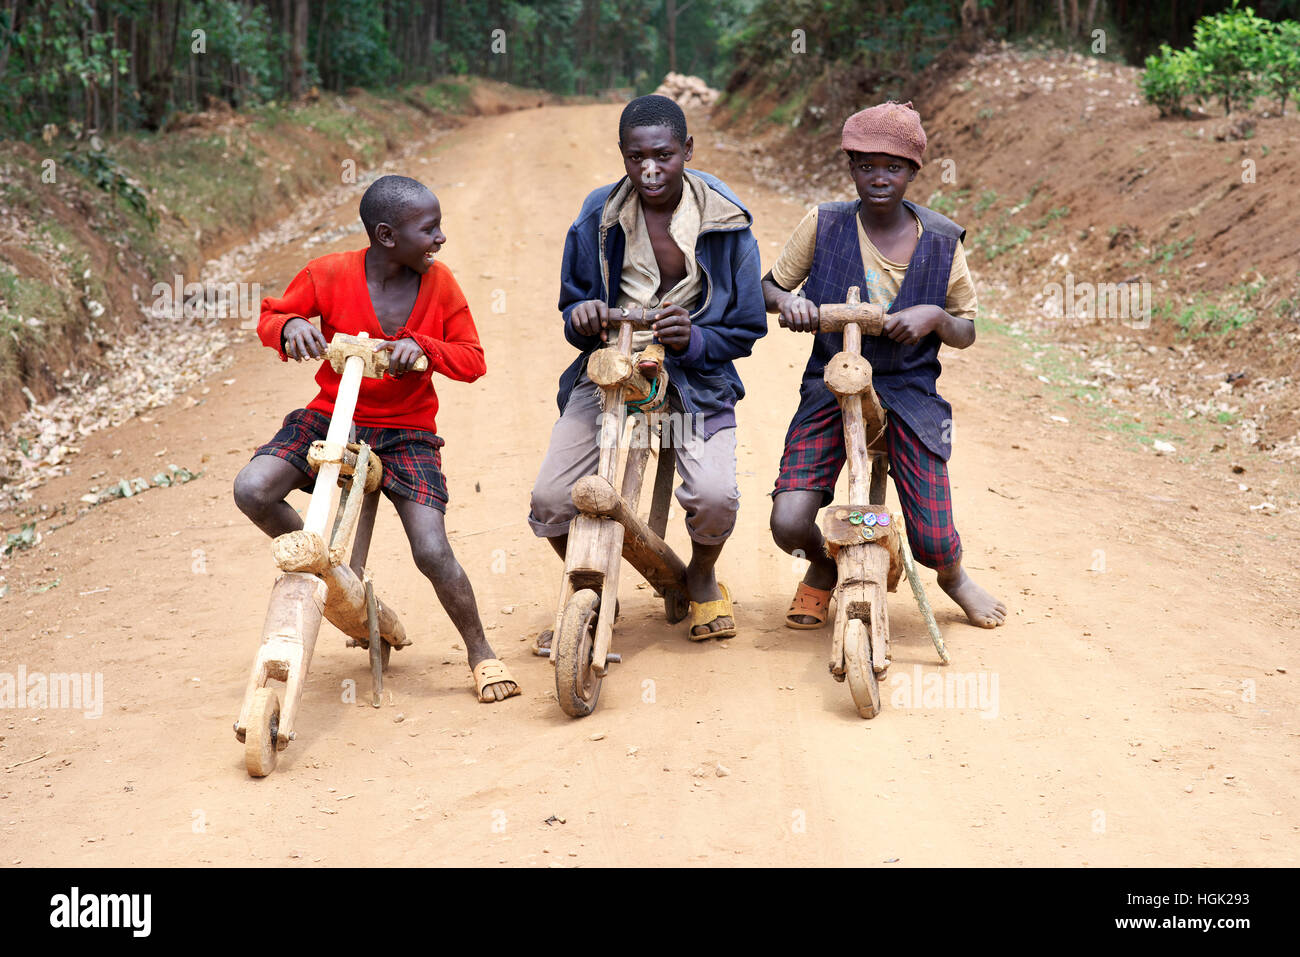 Trois jeunes enfants ougandais posent pour une photo sur leurs vélos en bois en milieu rural en Afrique Banque D'Images